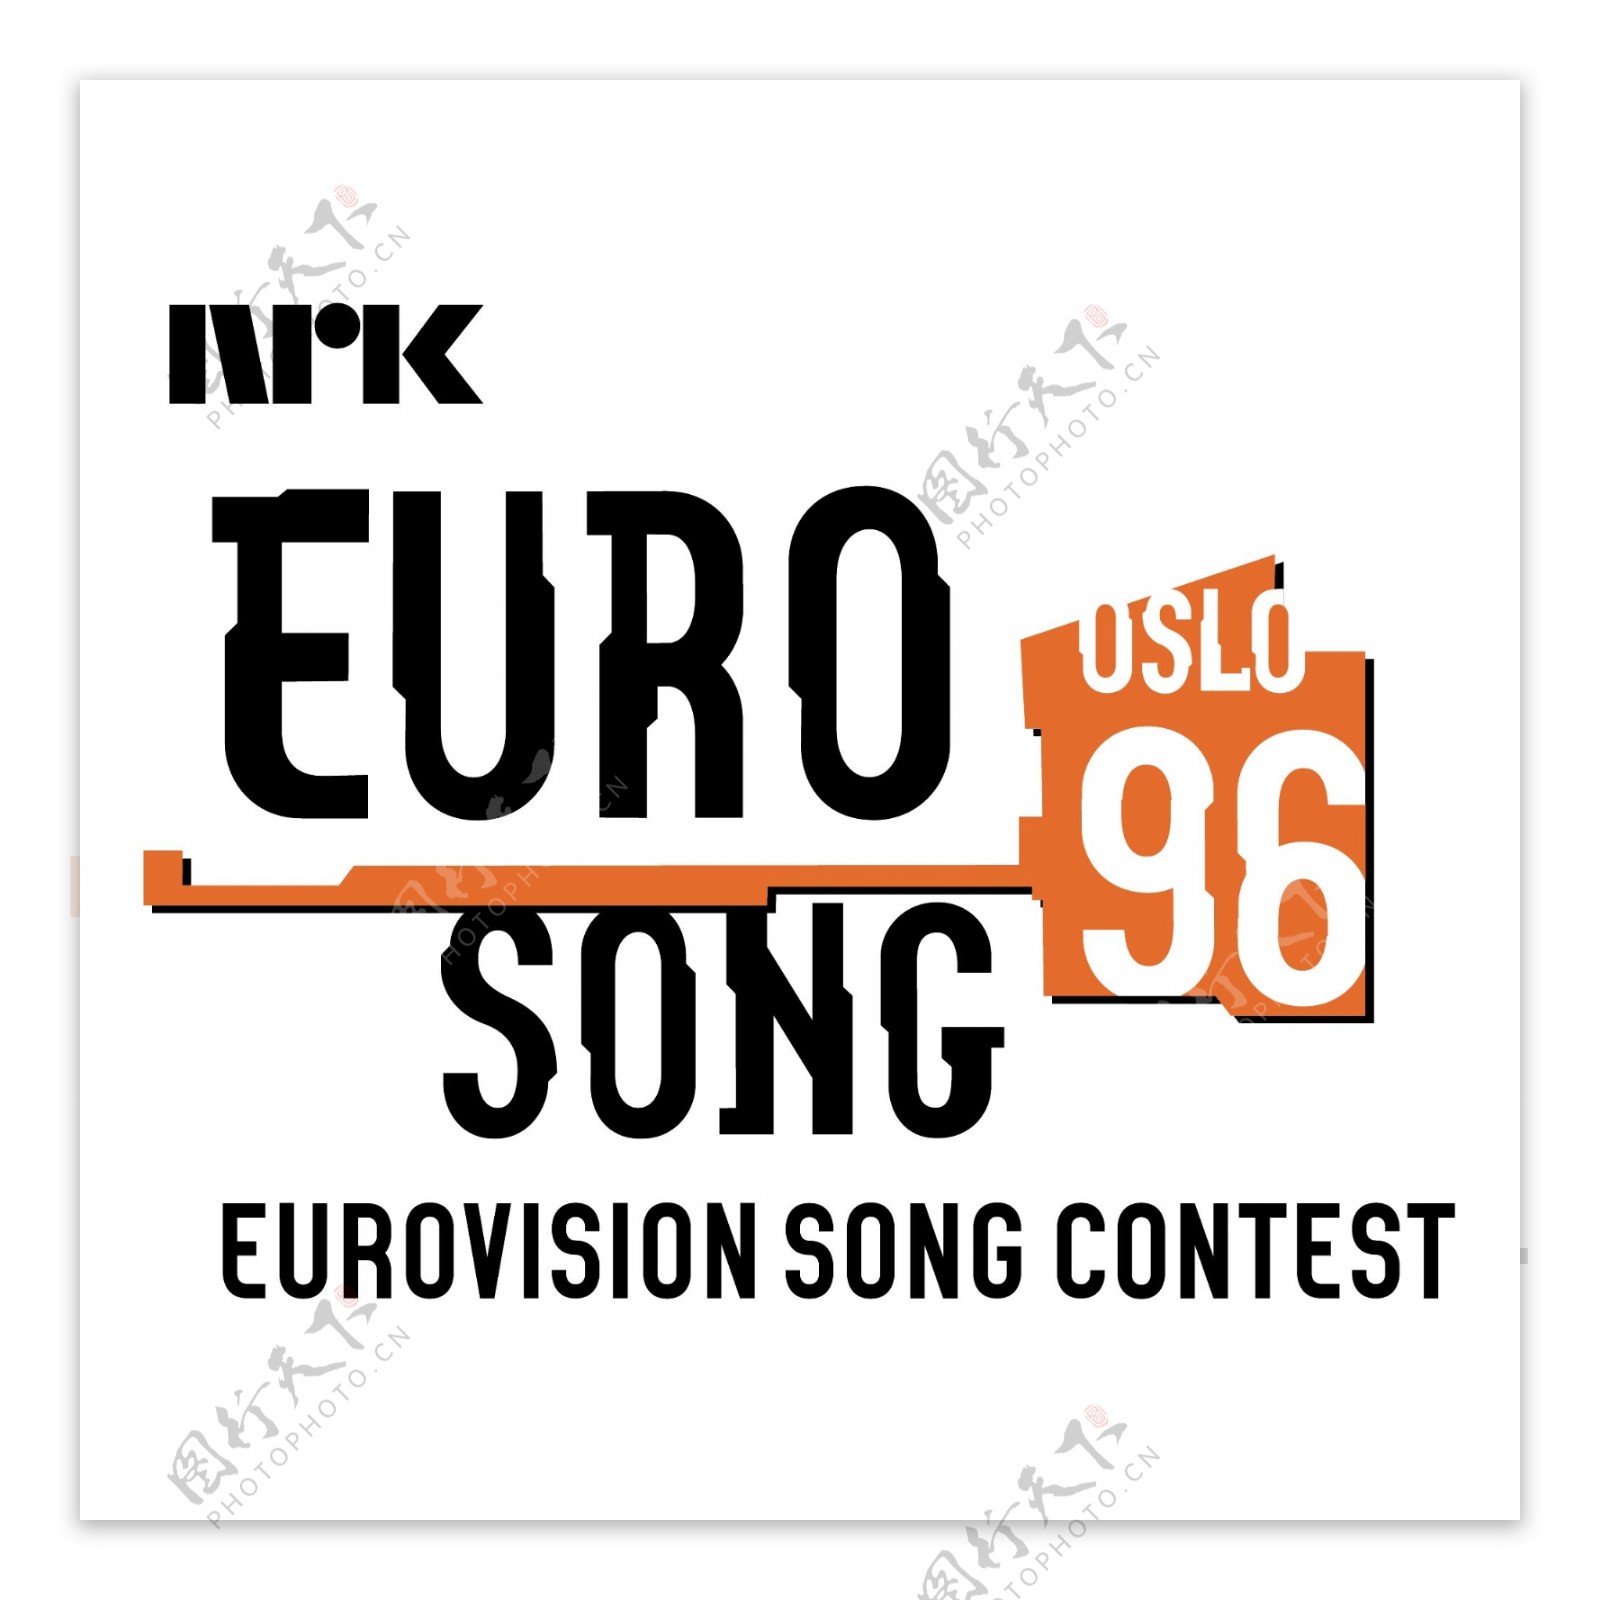 欧洲电视歌曲大赛1996